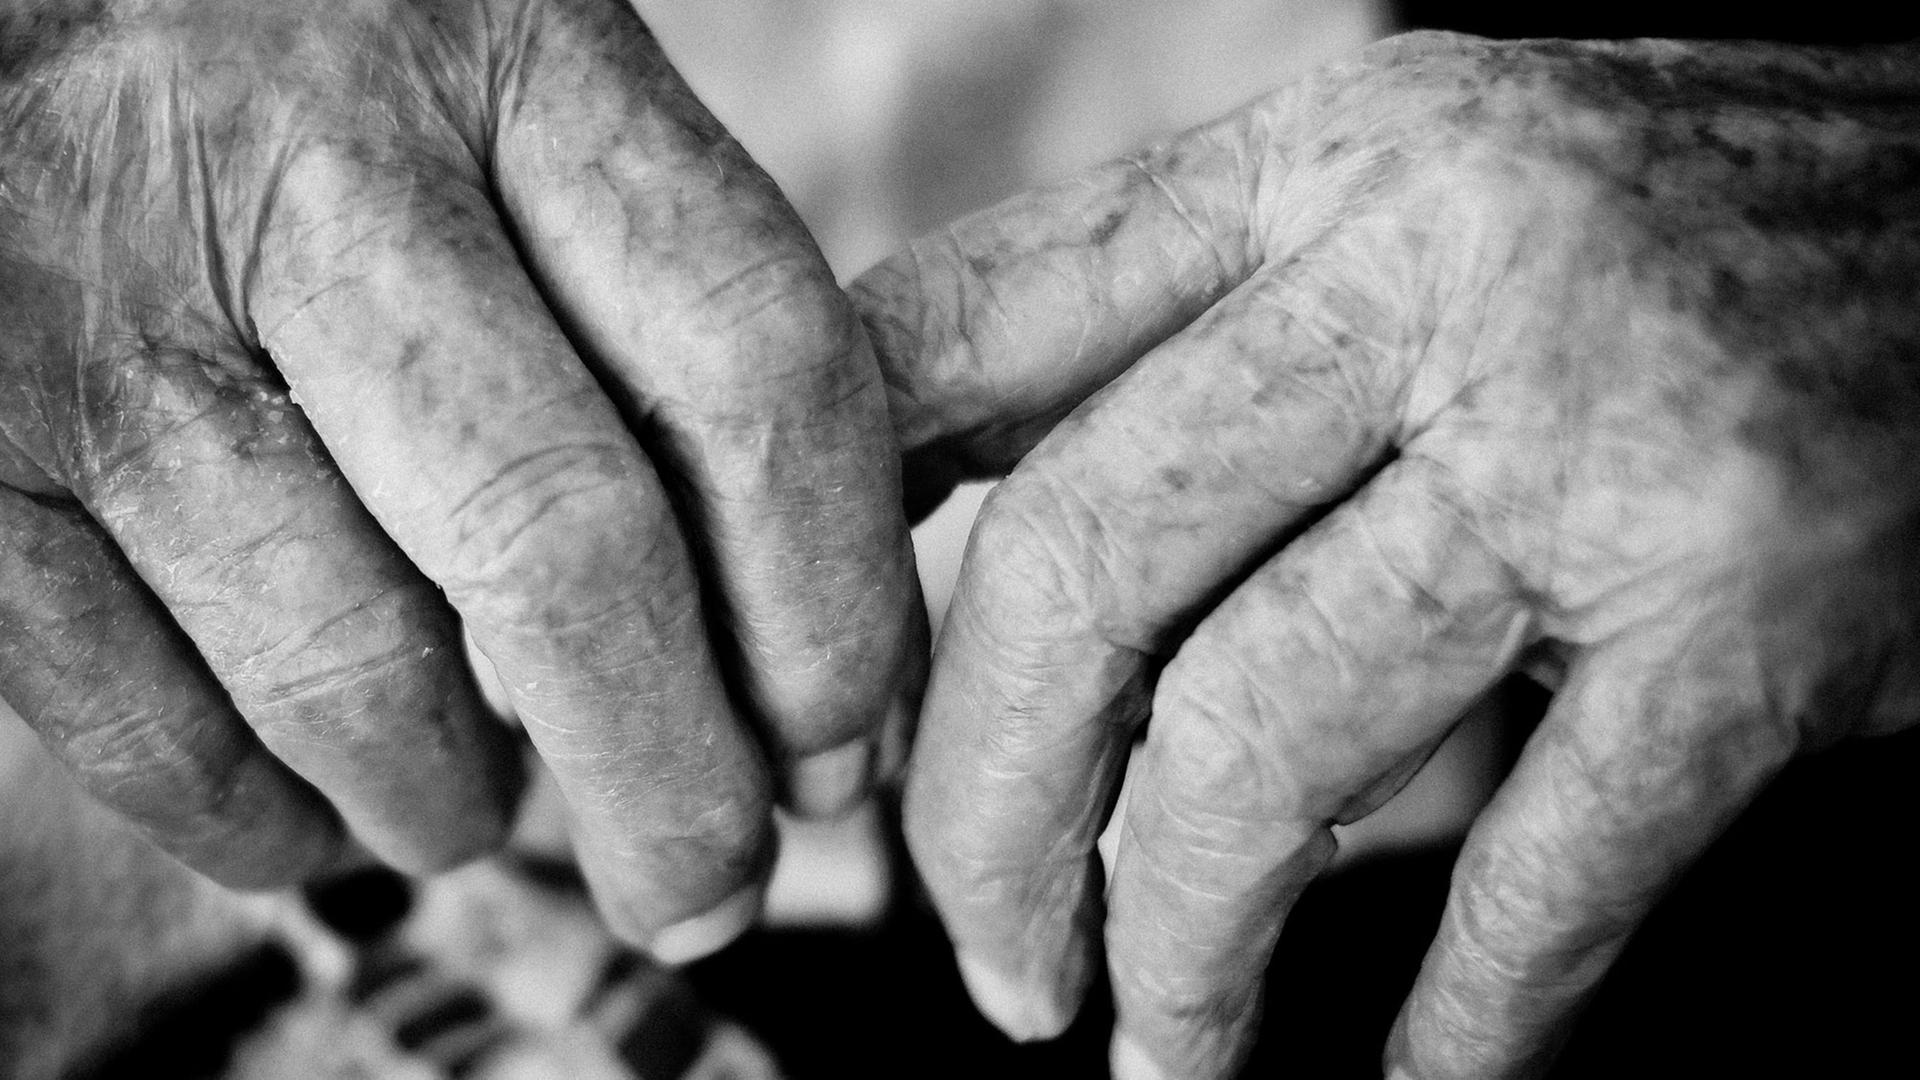 Die Hände einer über 100 Jahre alten Frau in Großaufnahme.